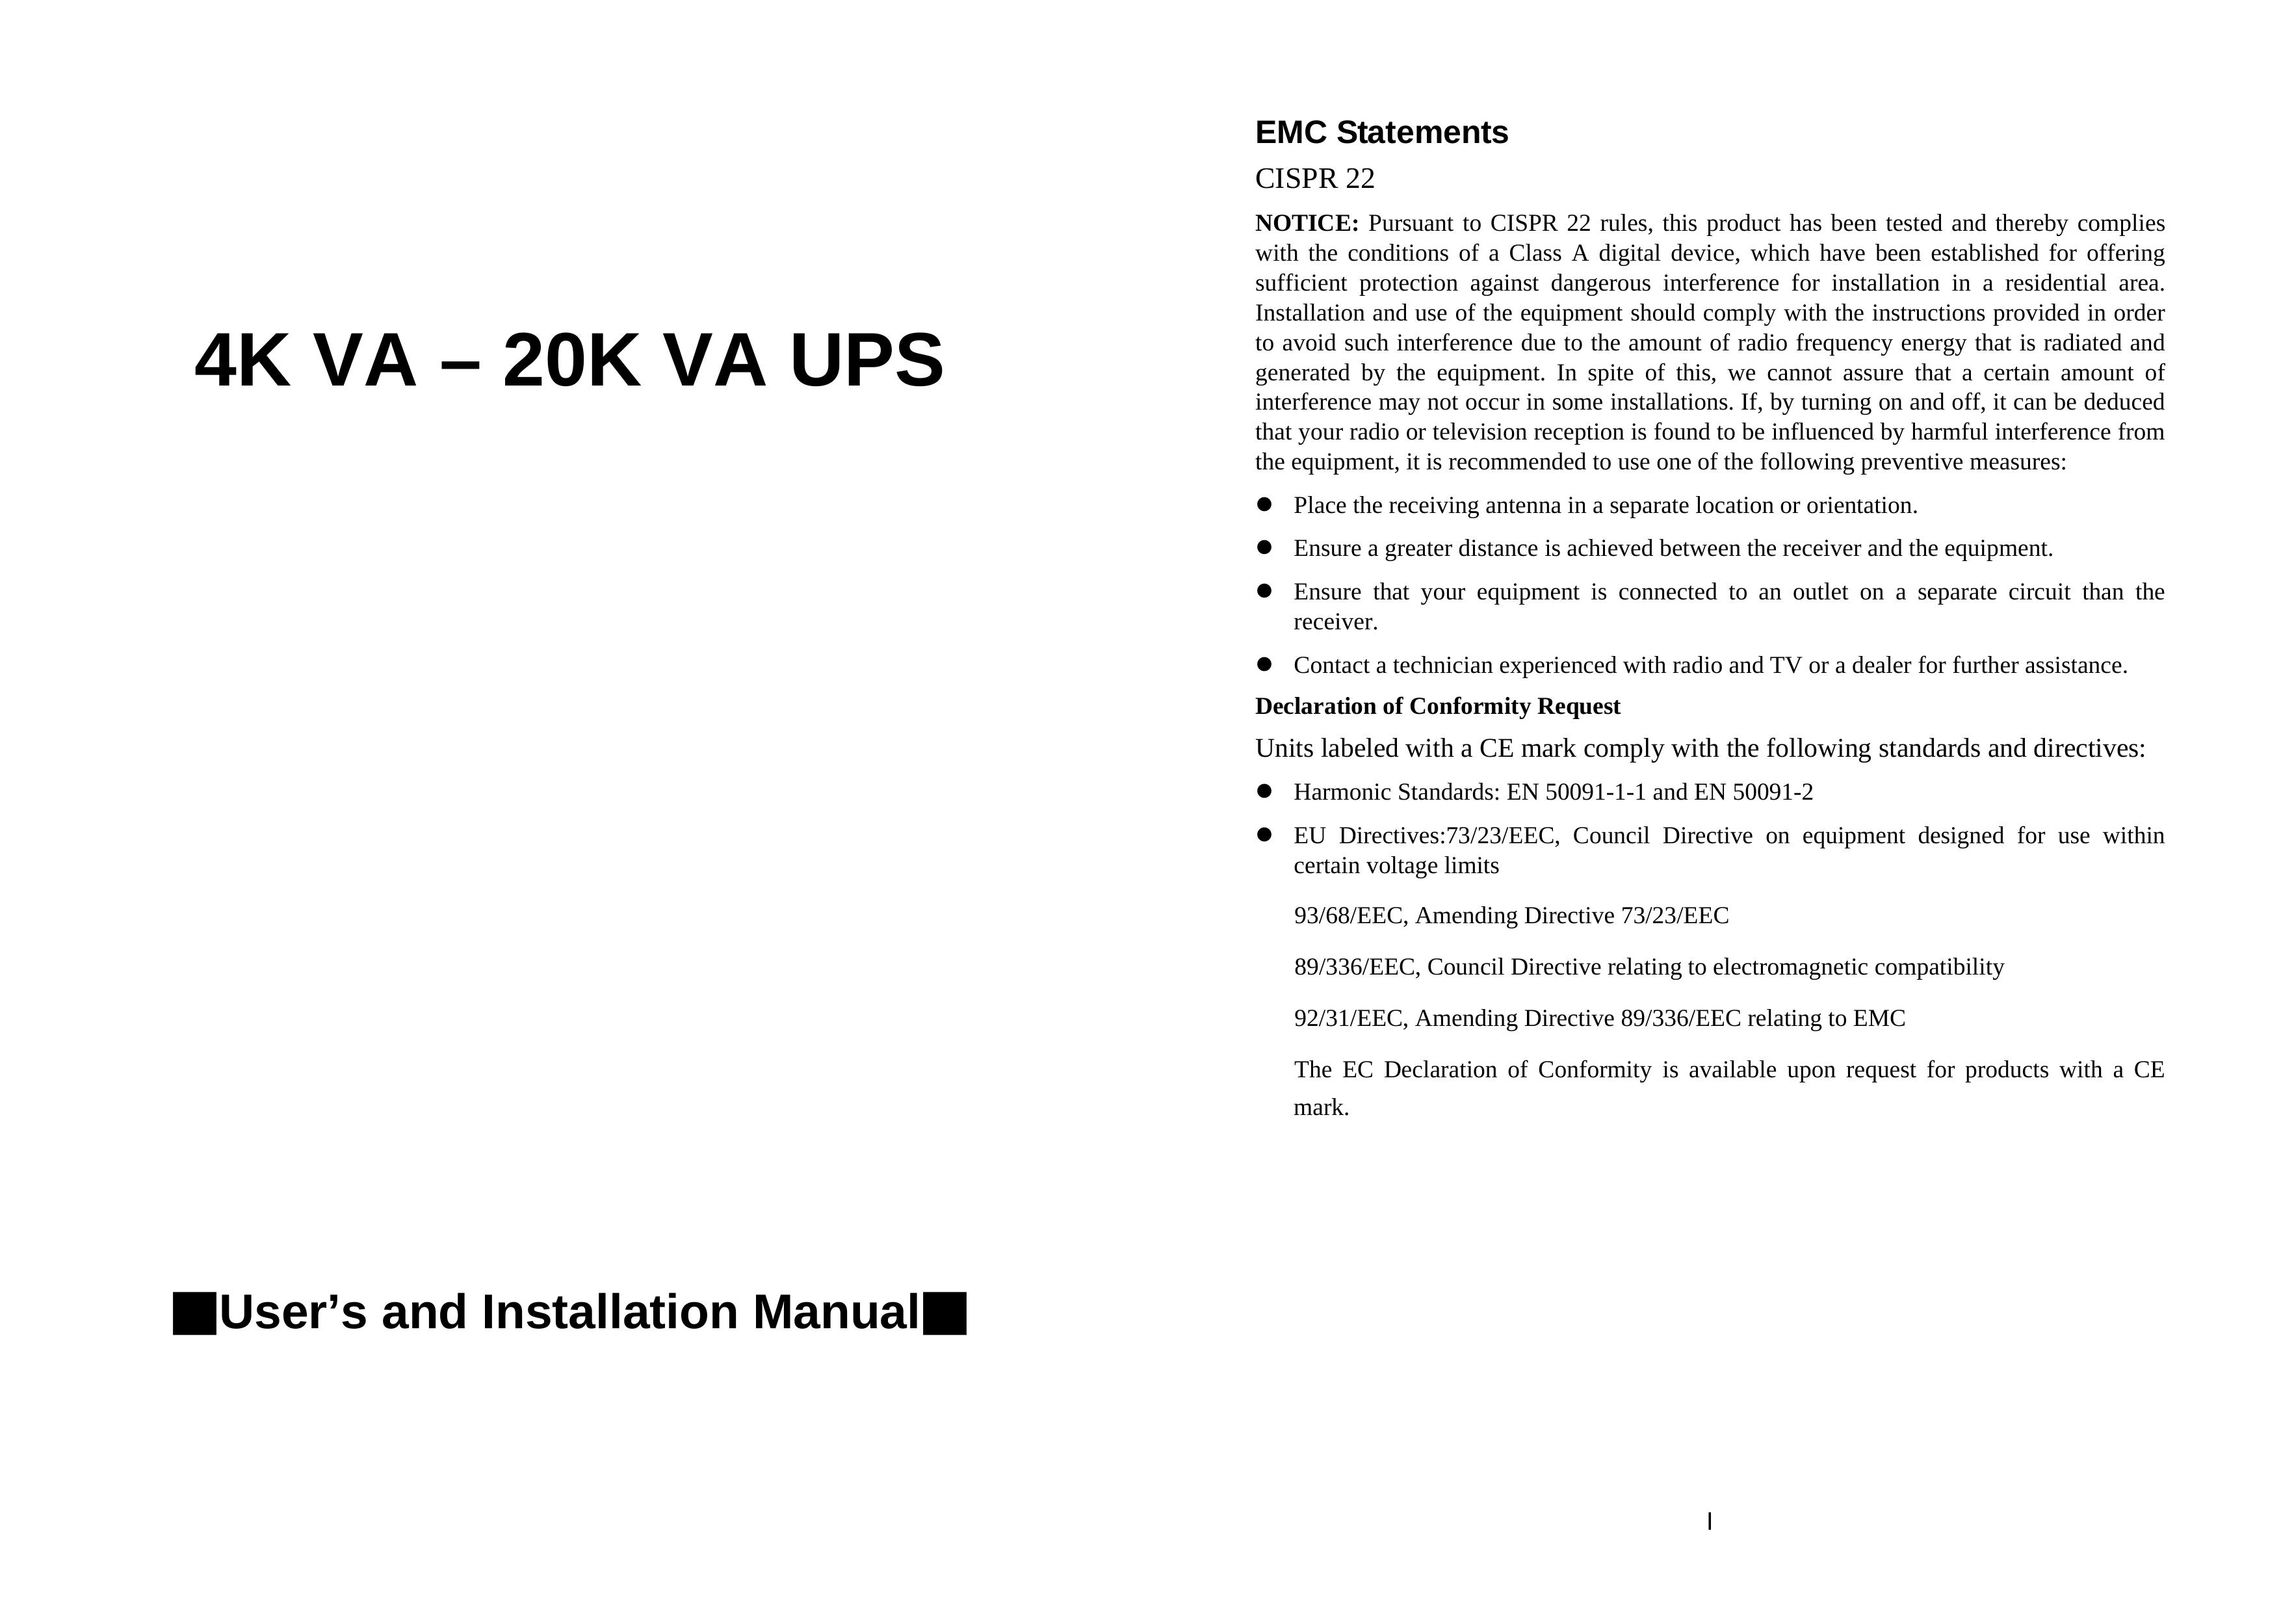 EMC 4K VA 20K VA UPS Power Supply User Manual